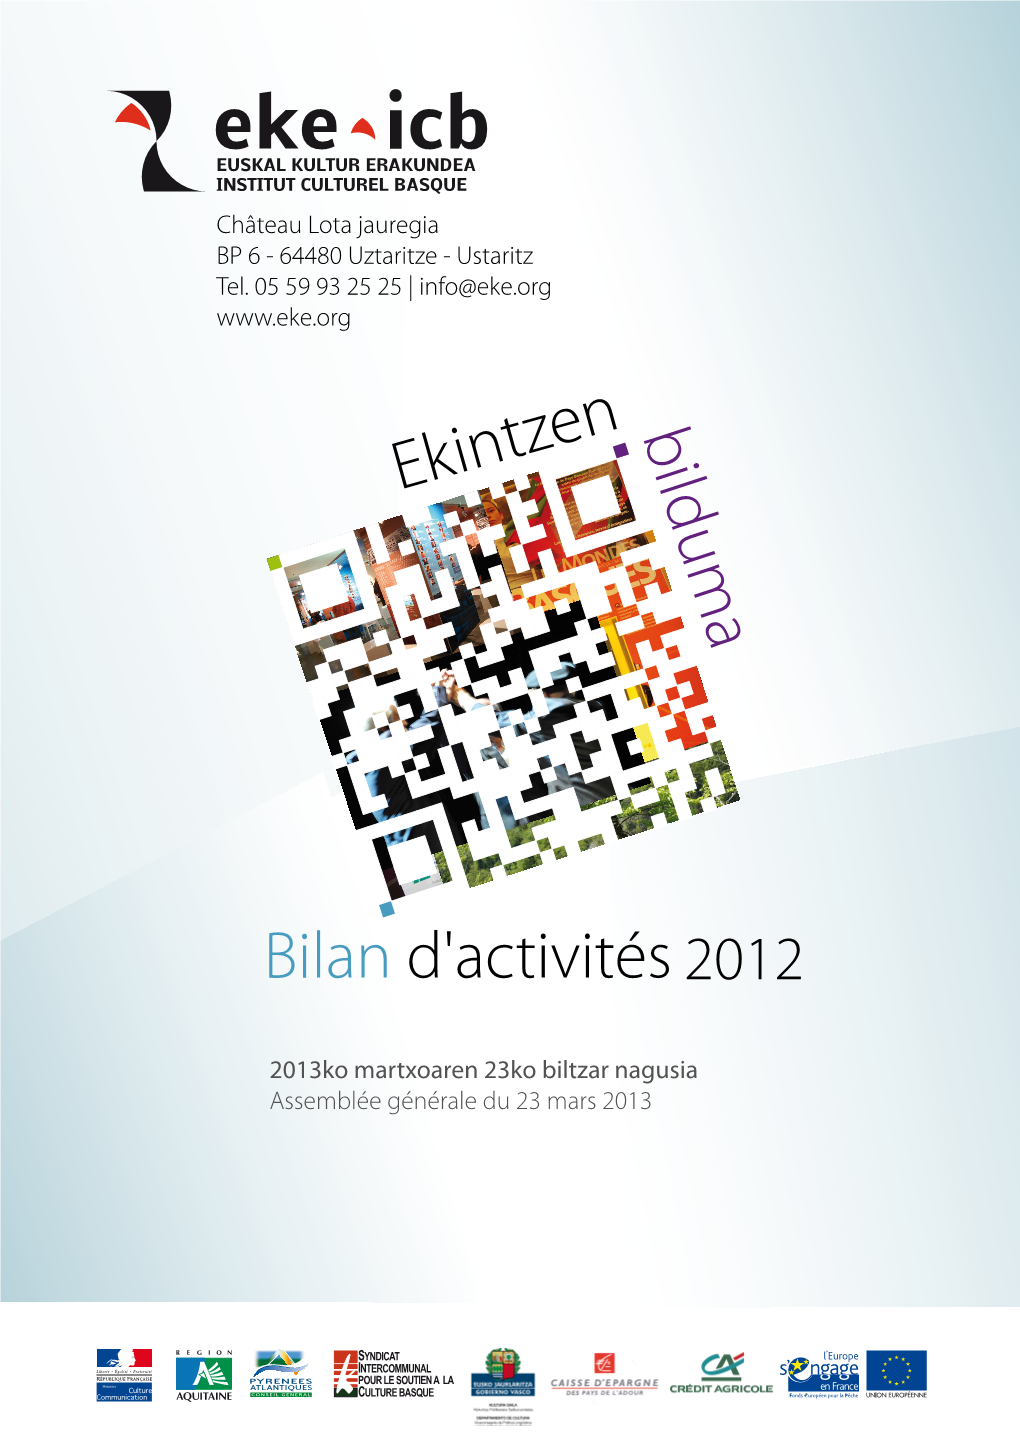 Rapport D'activité 2012